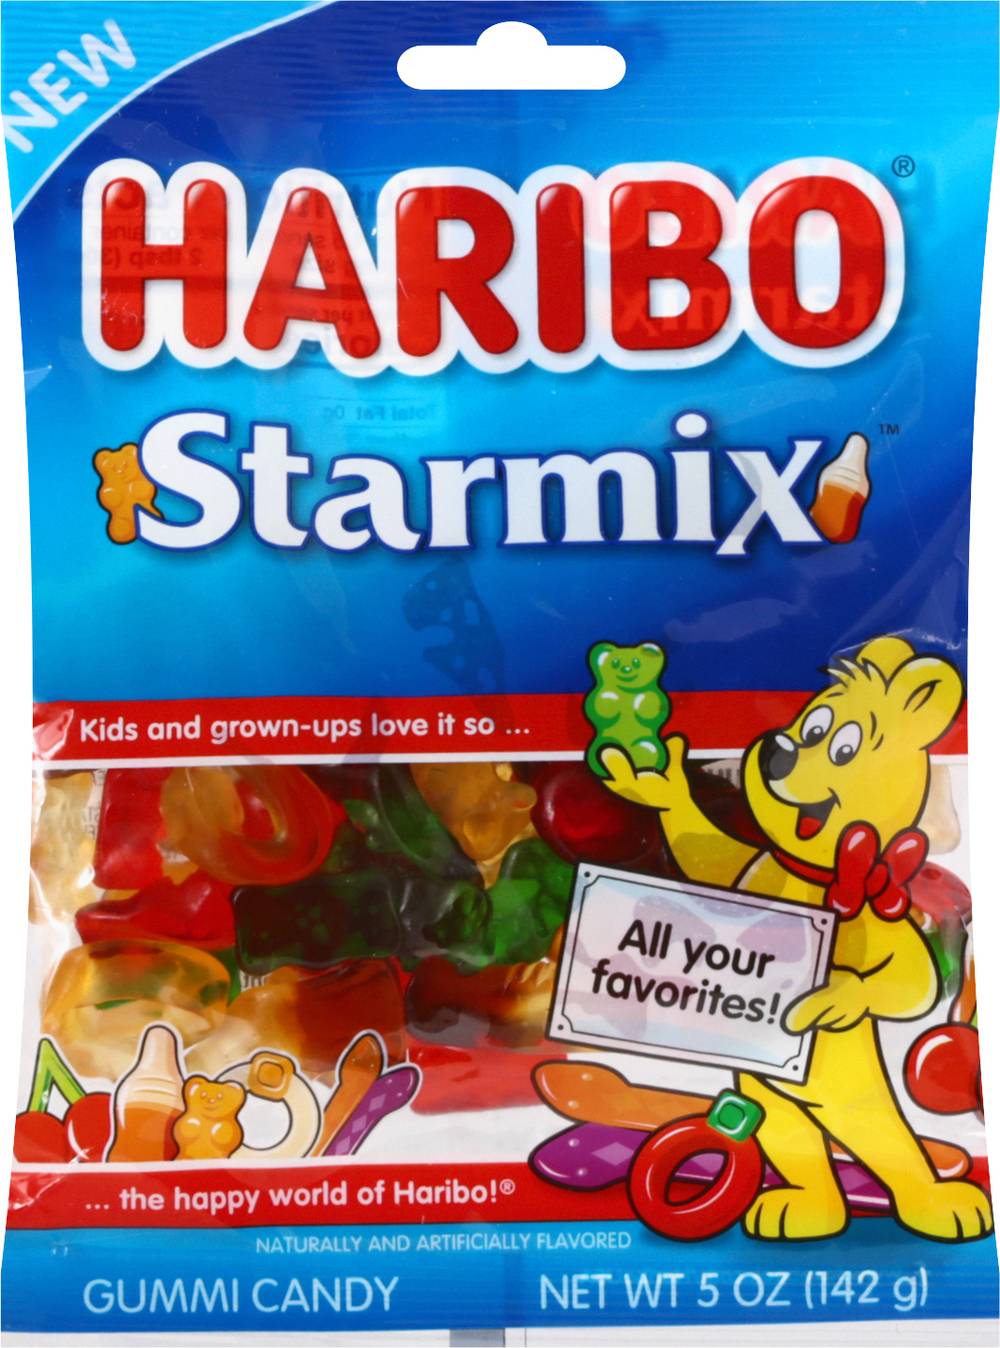 Haribo Starmix Gummi